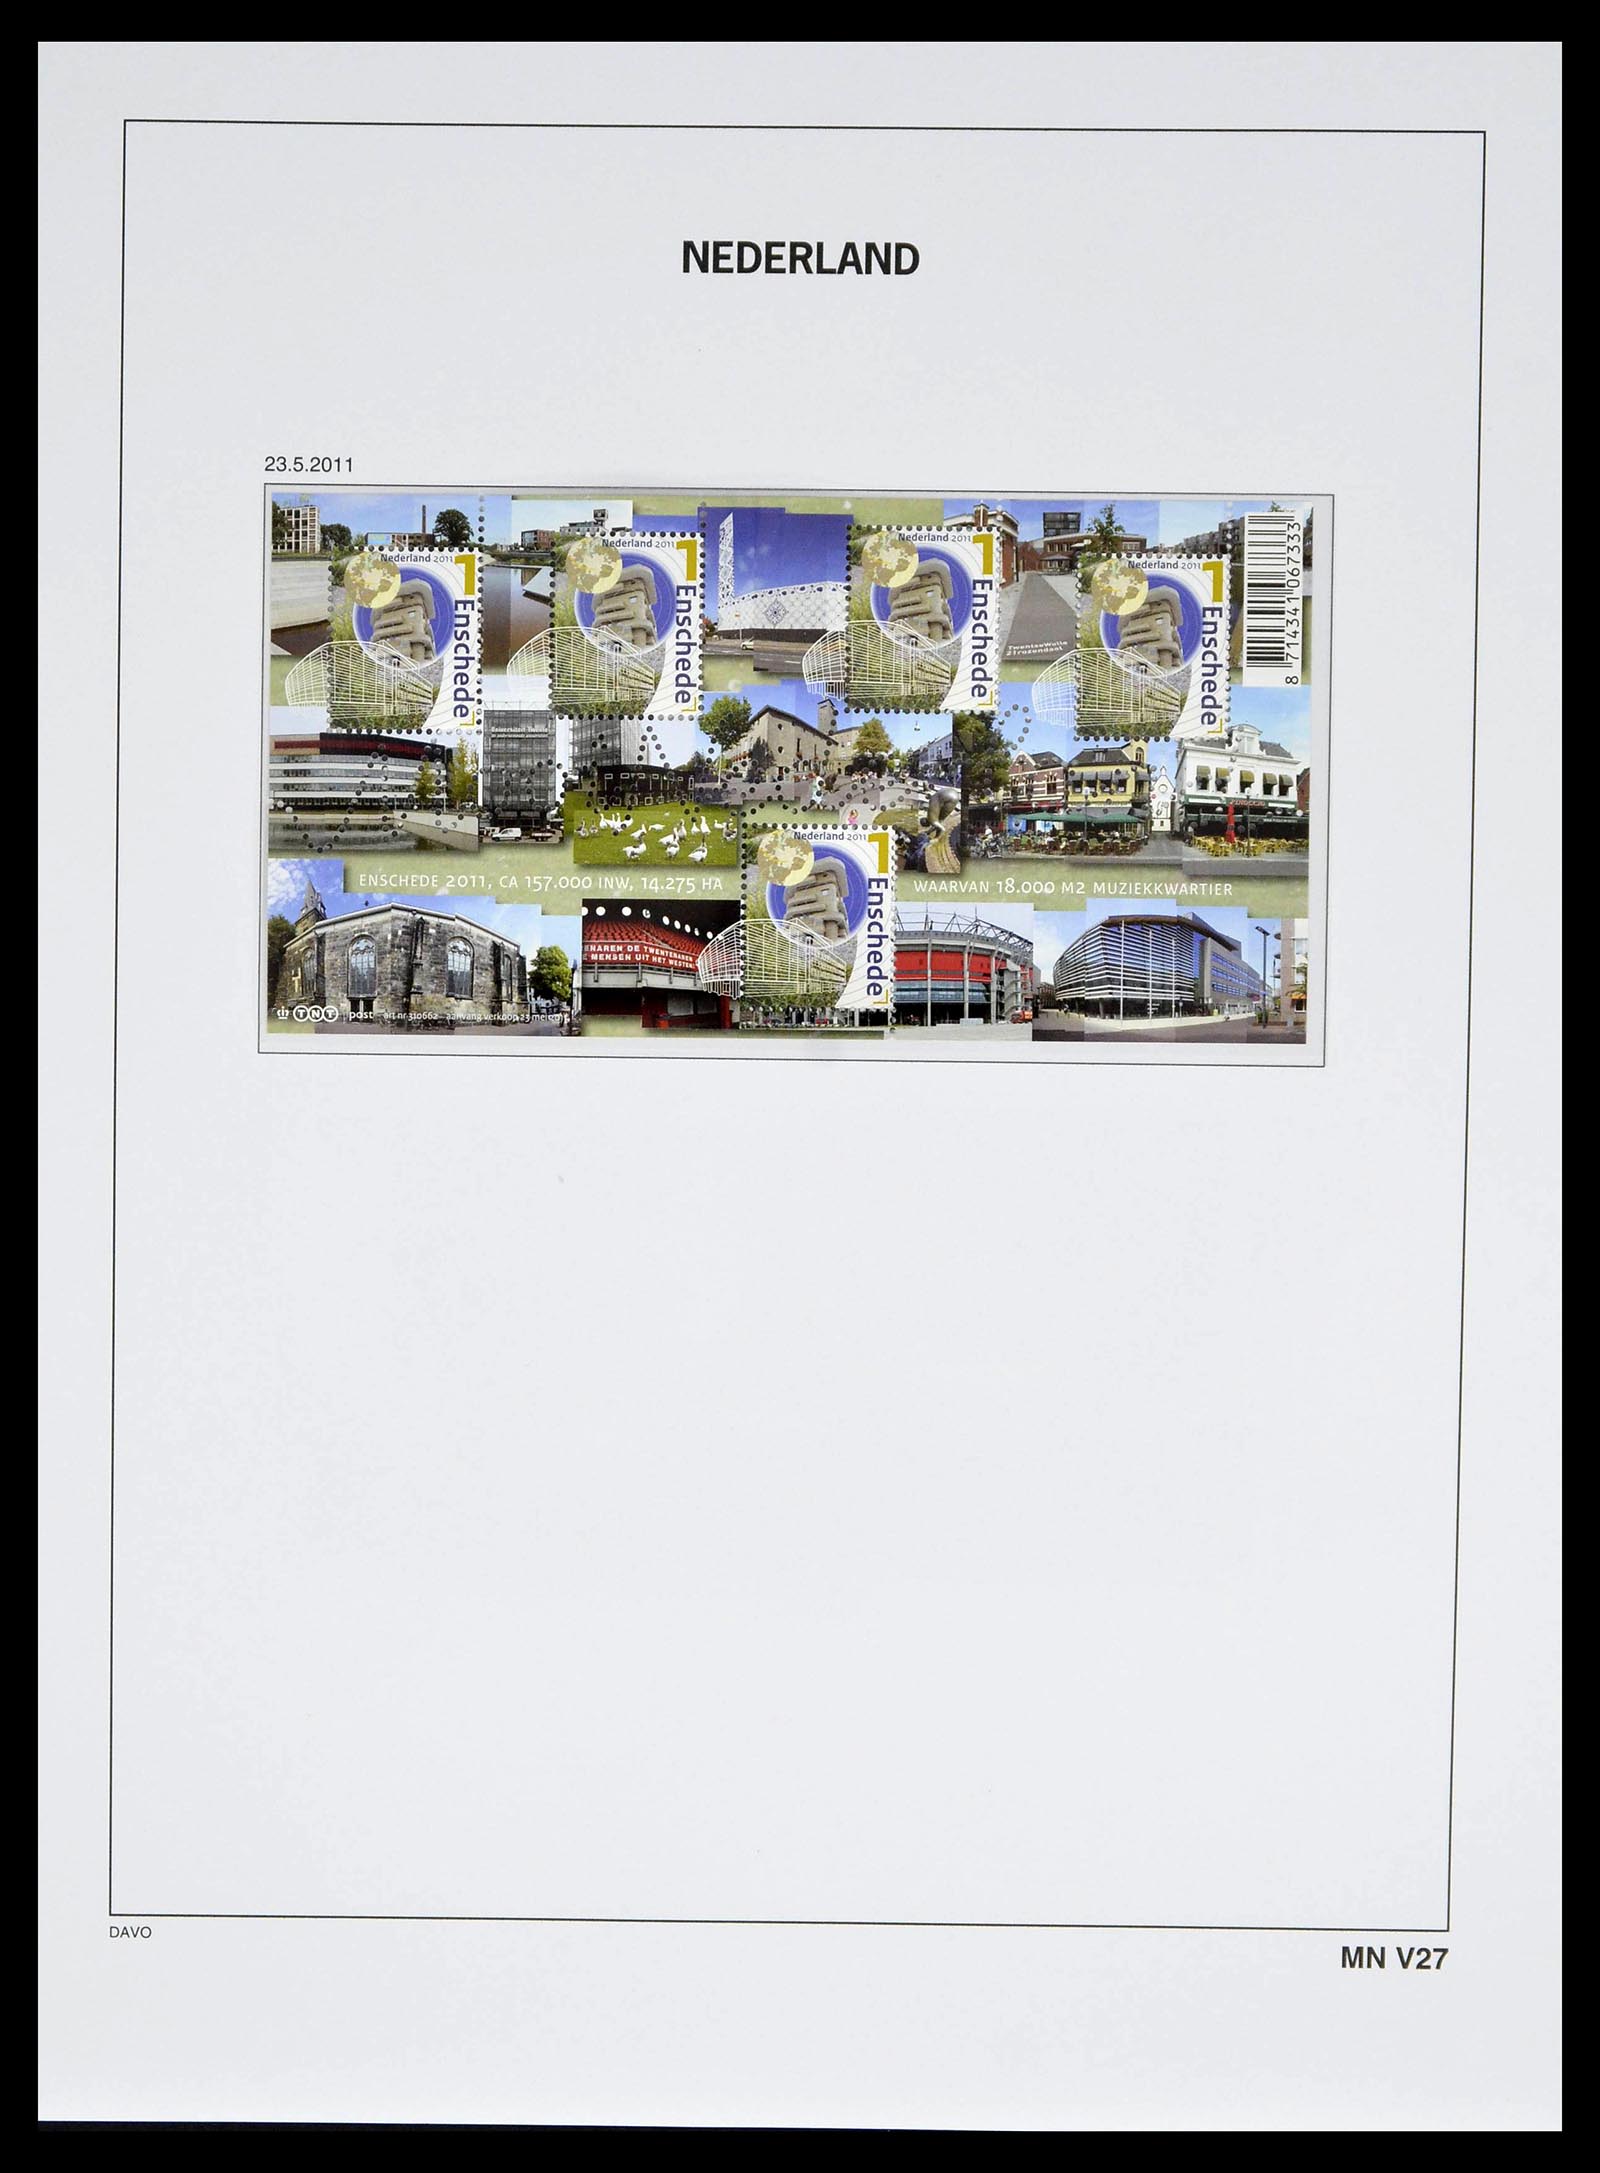 39134 0246 - Stamp collection 39134 Netherlands sheetlets 1992-2019!